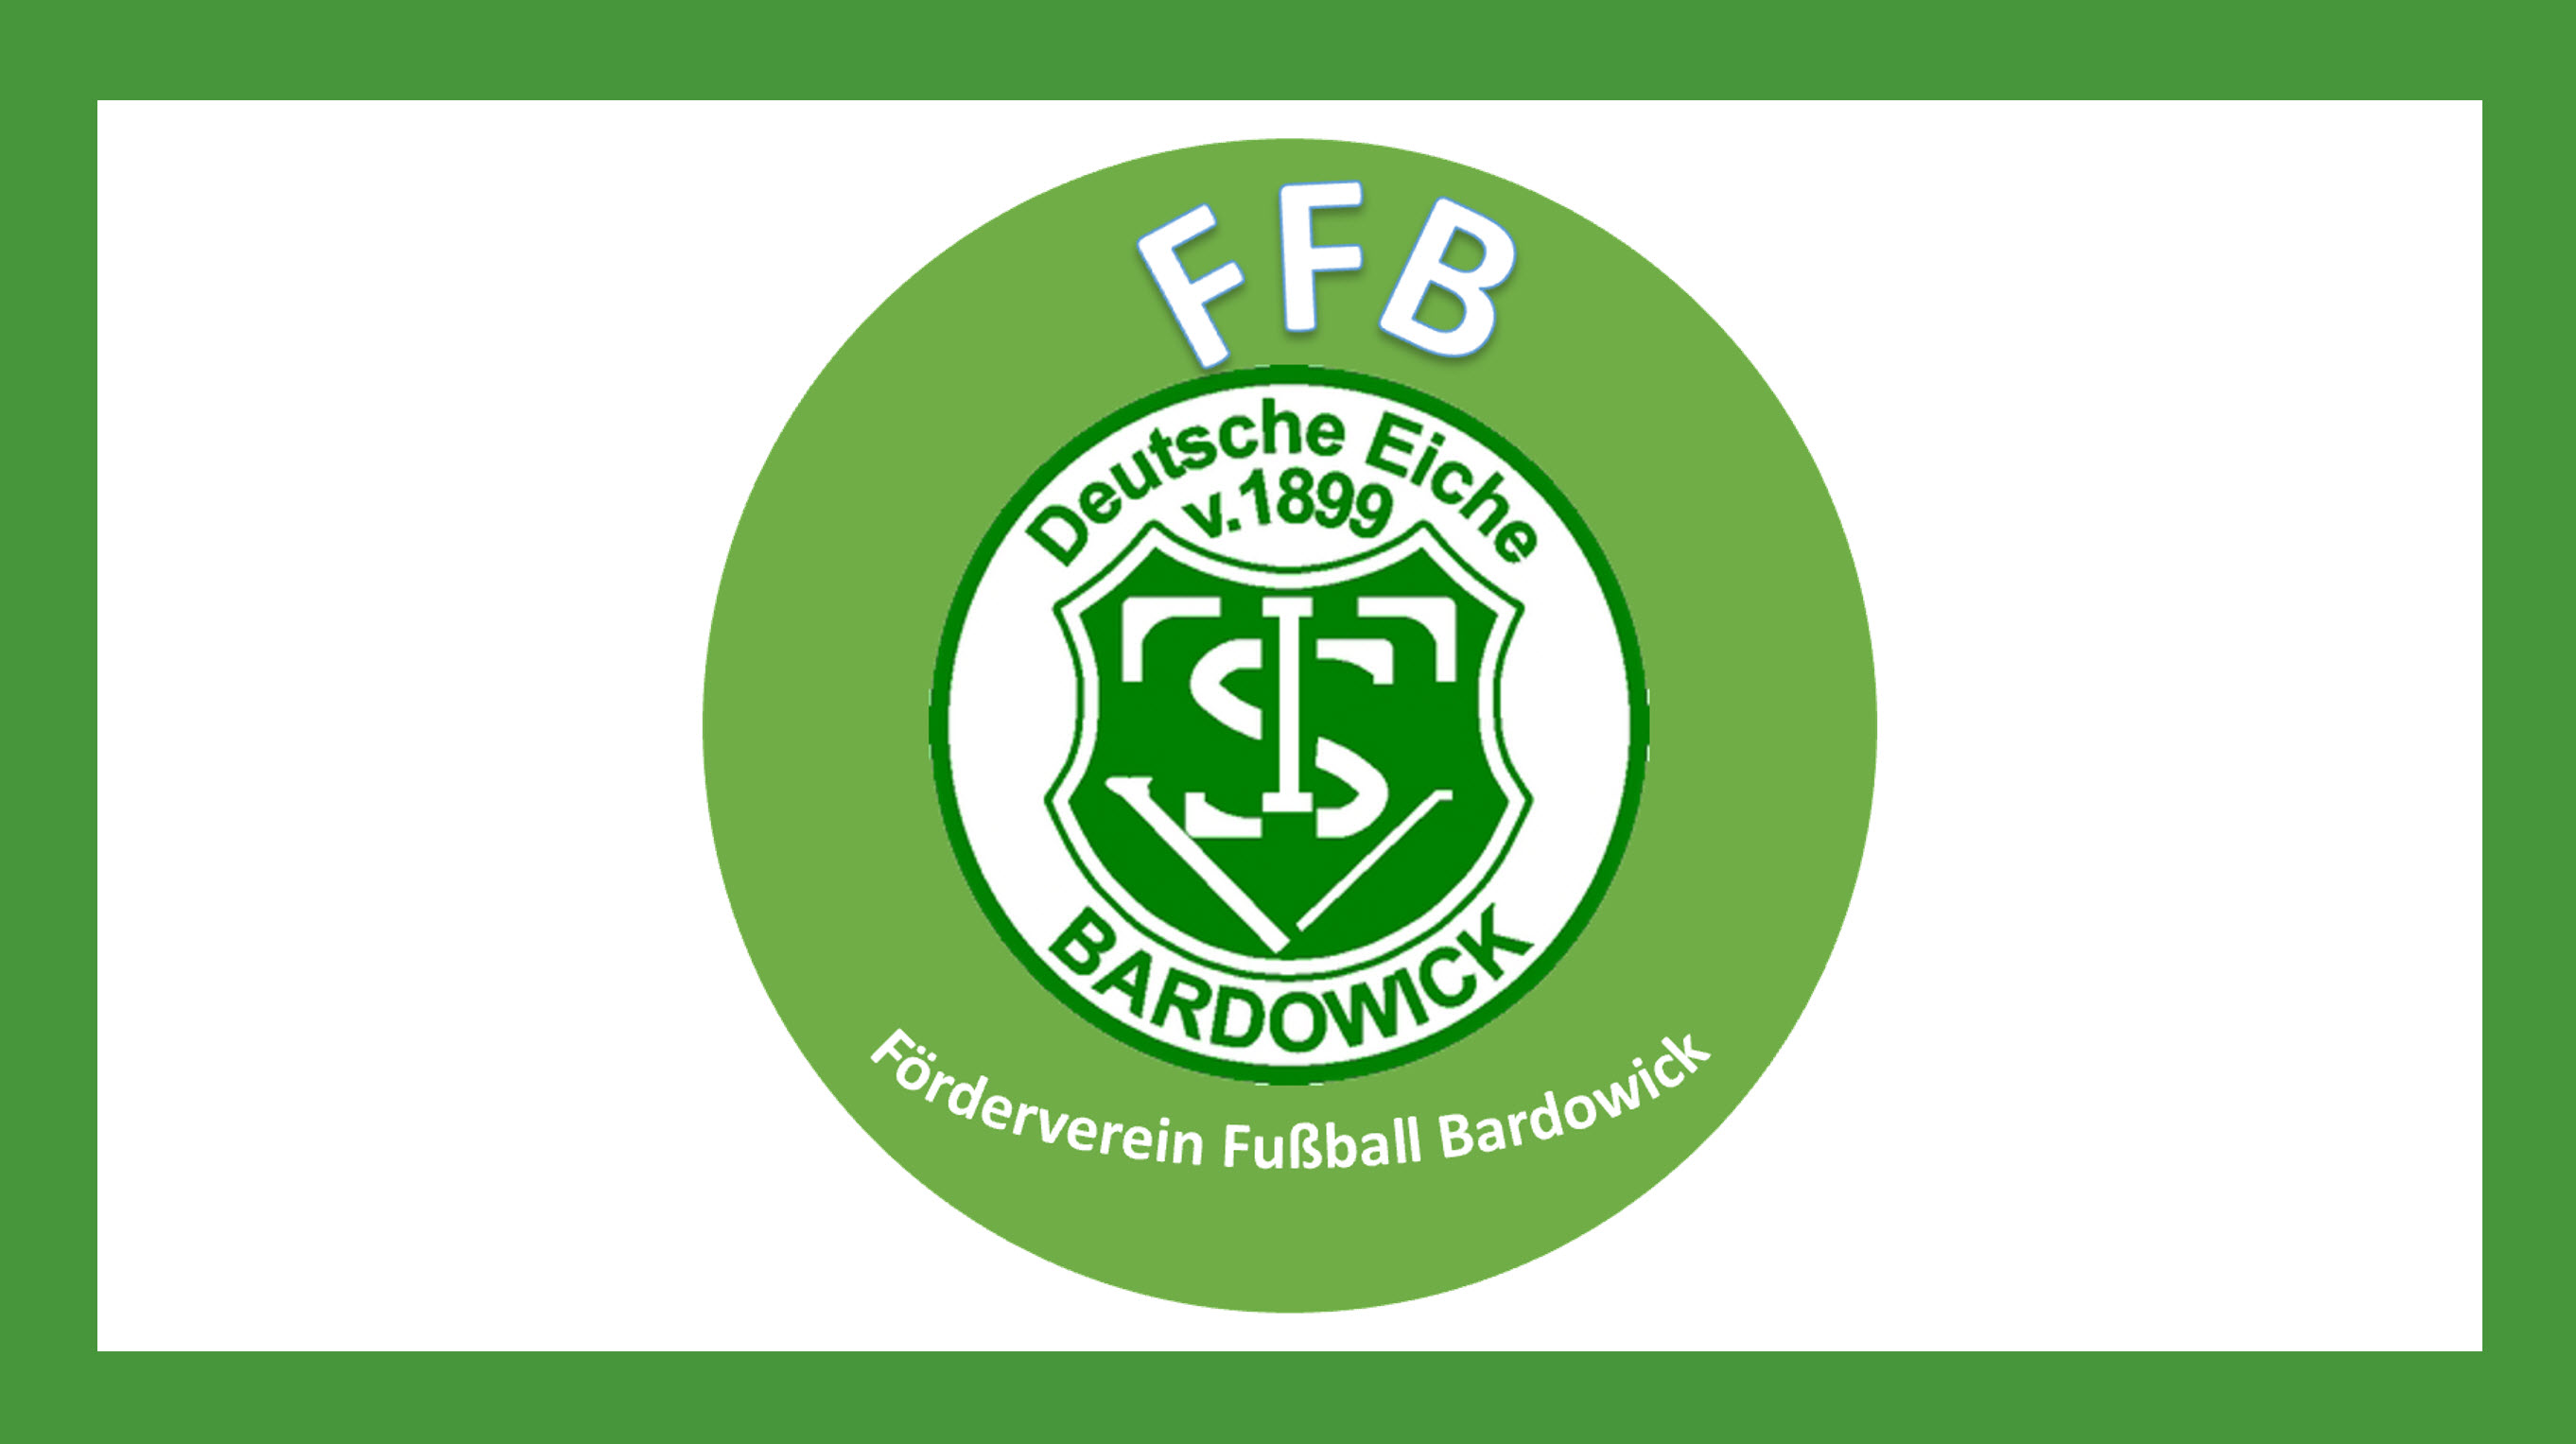 Gründungsversammlung Förderverein Fußball Bardowick am 01.10.2019 um 18 Uhr